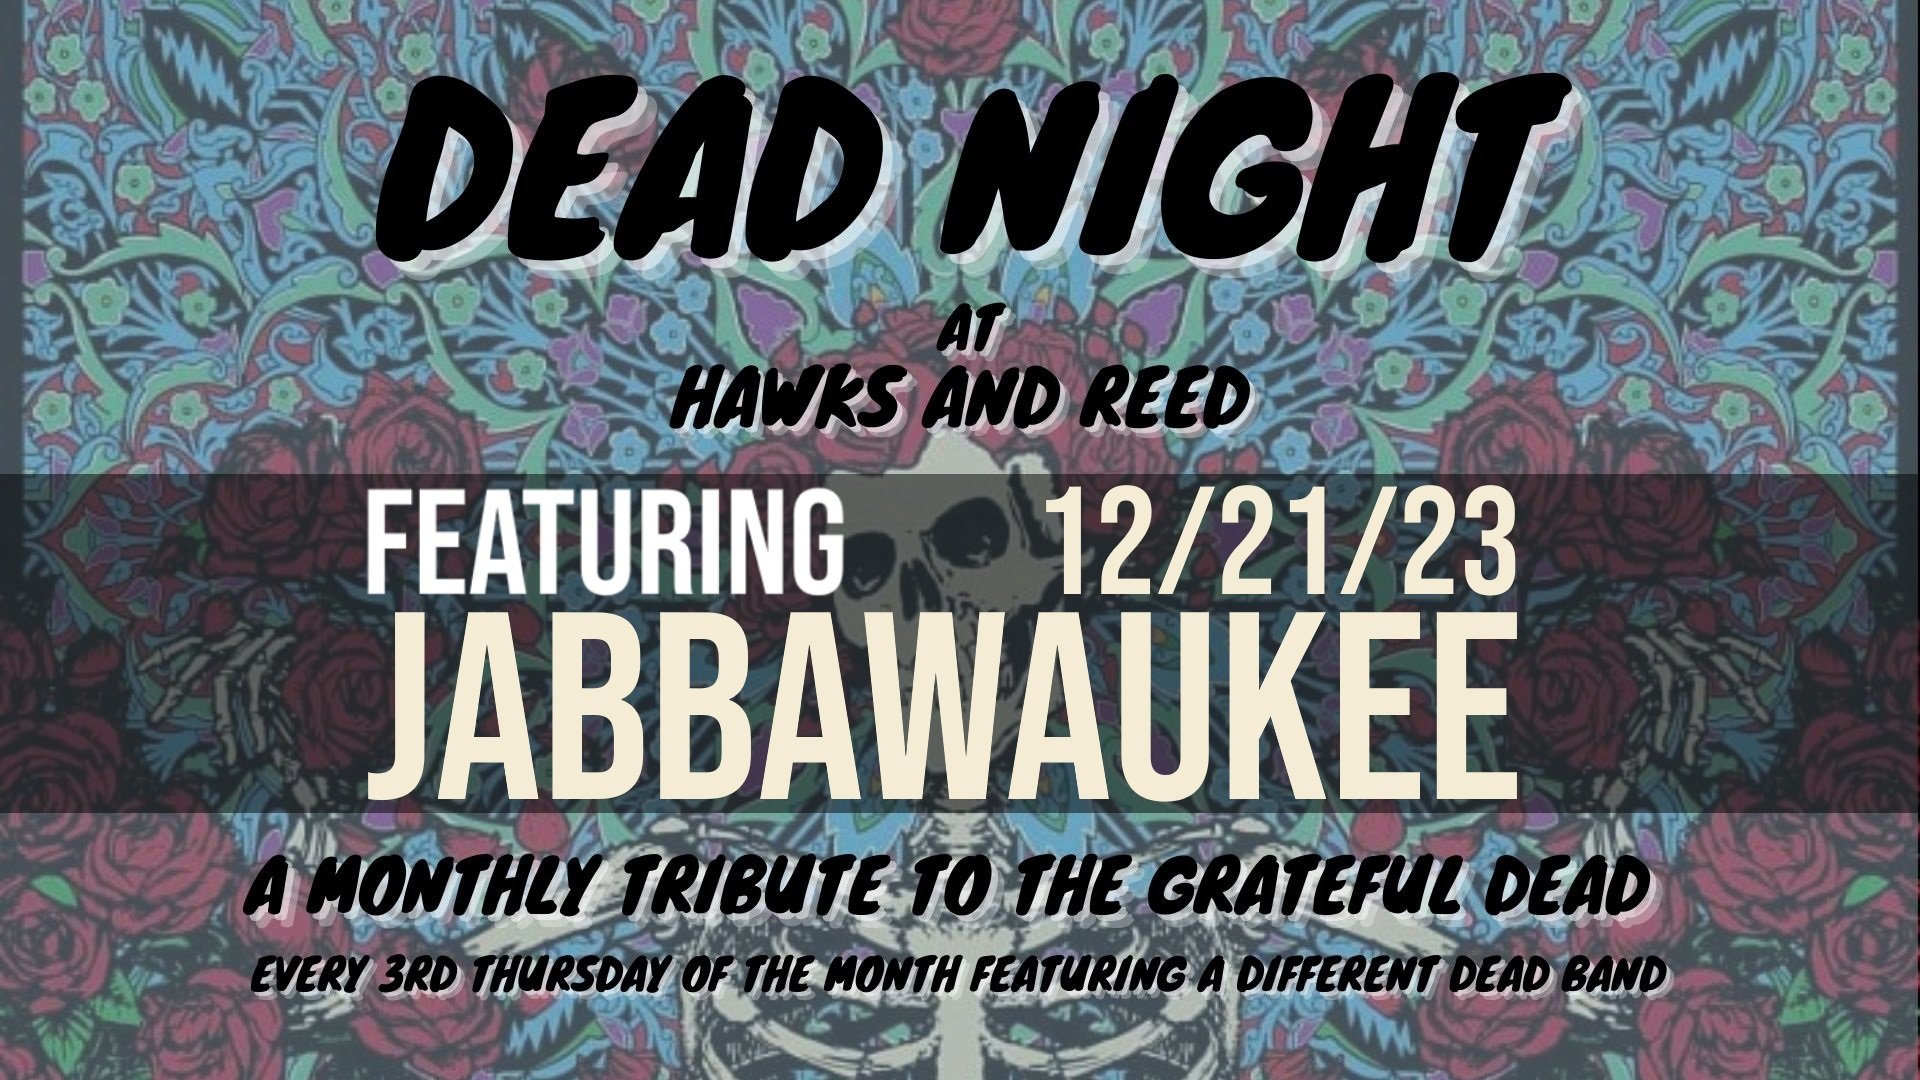 Dead Night with Jabbawaukee